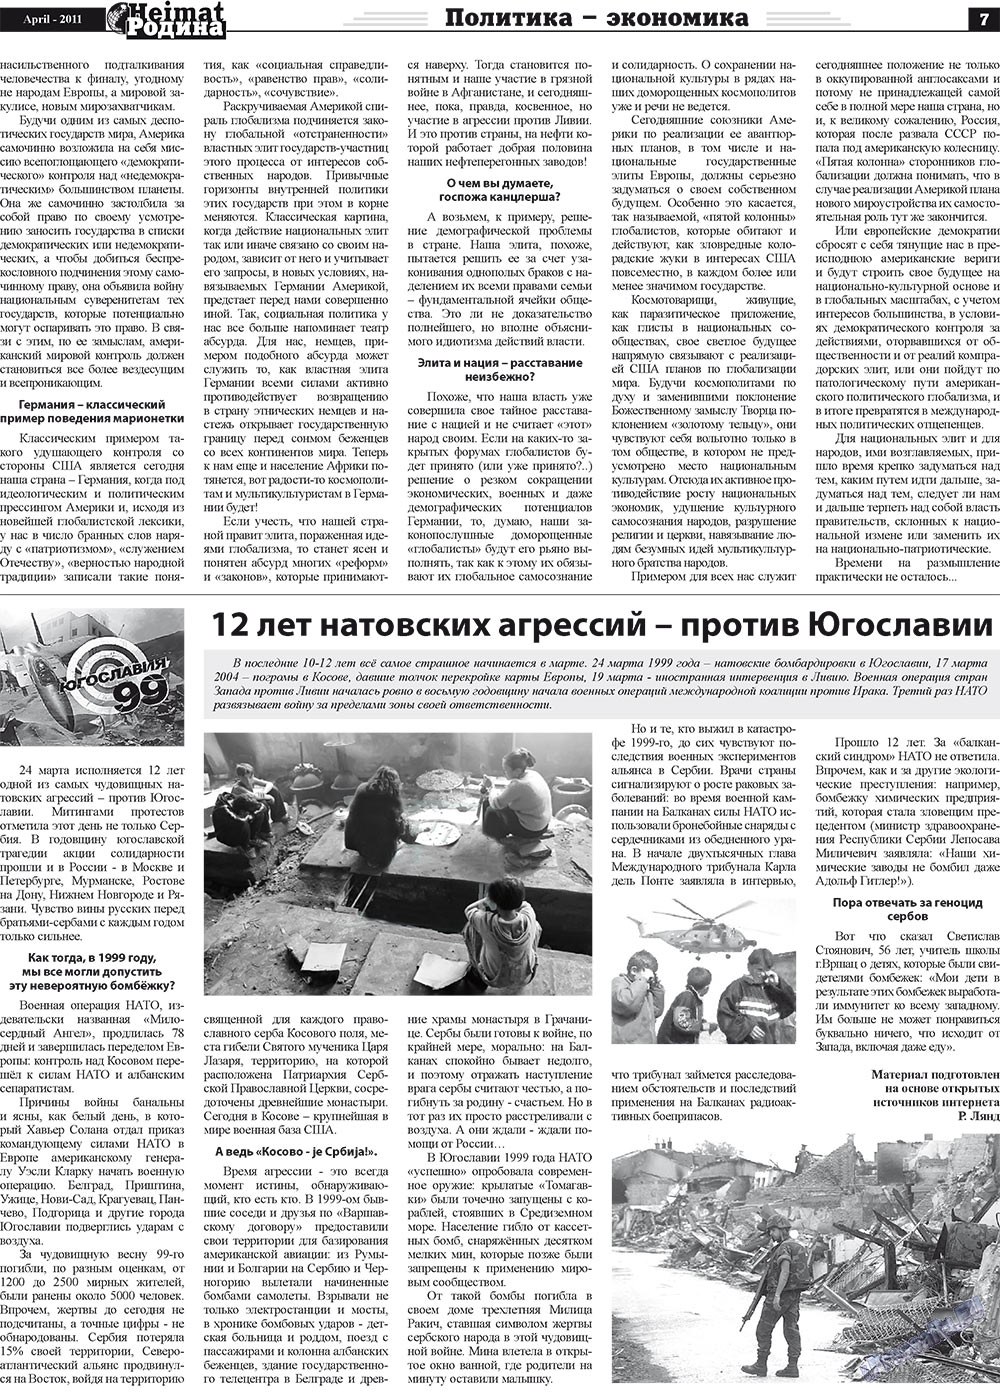 Heimat-Родина (газета). 2011 год, номер 4, стр. 7